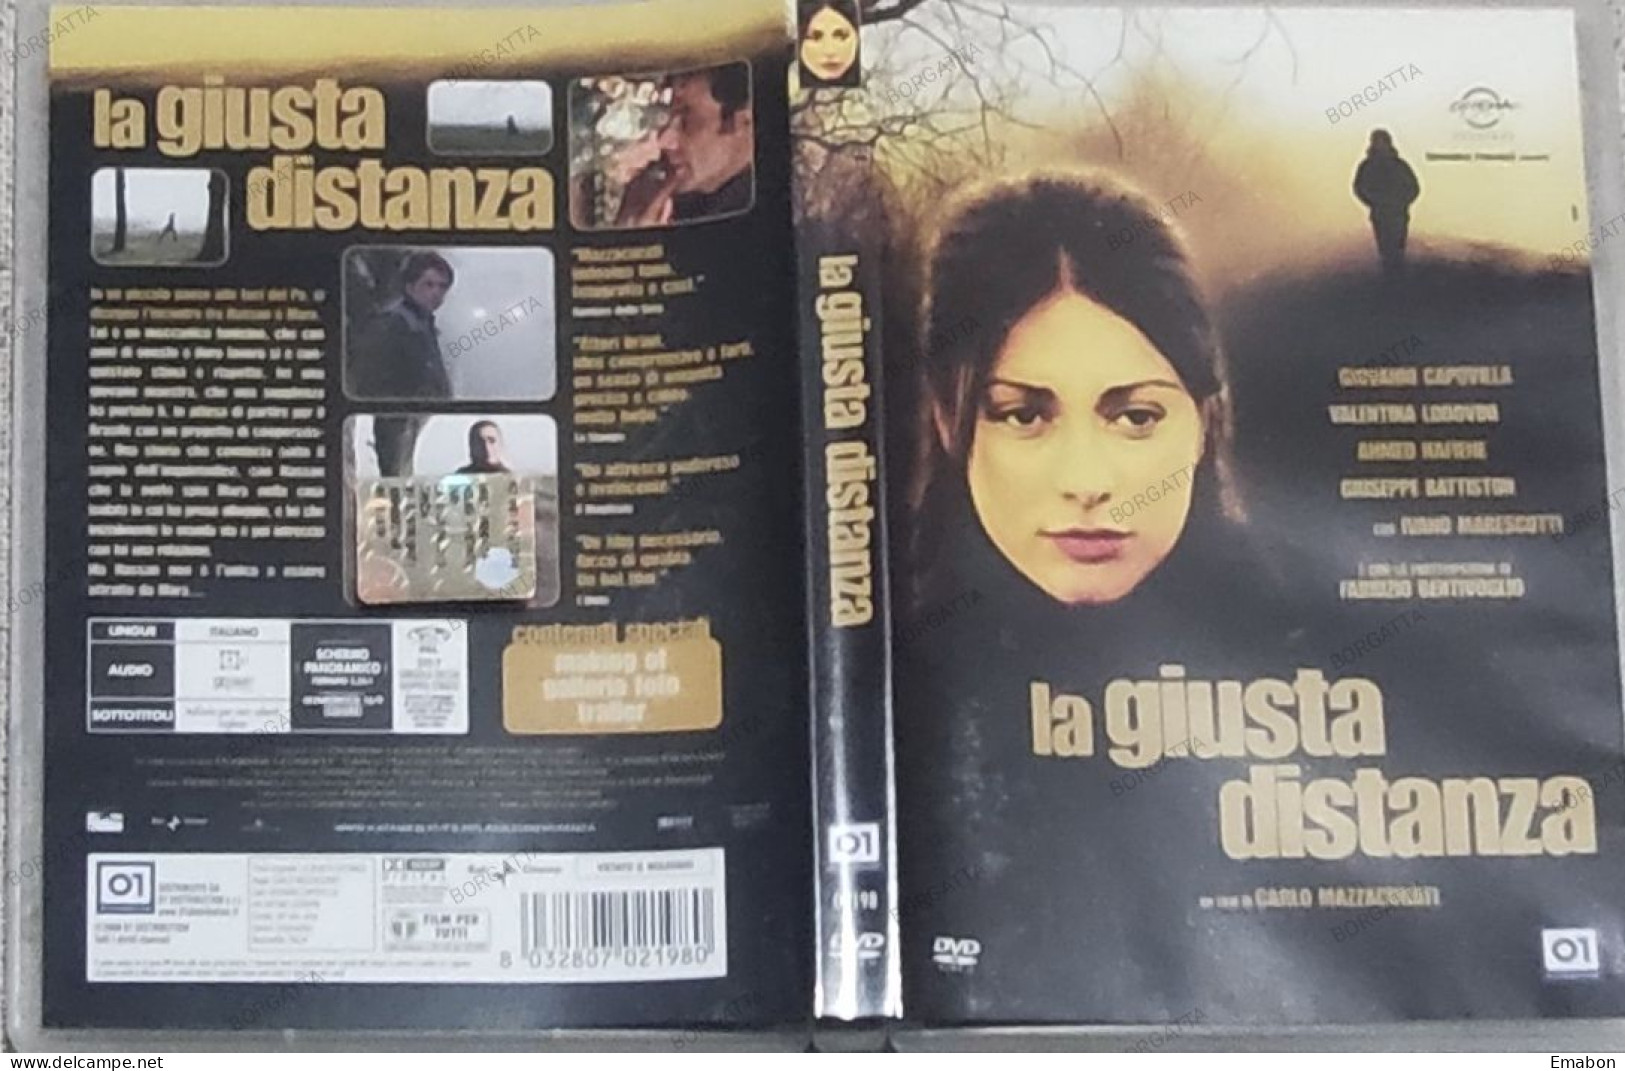 BORGATTA - DRAMMA - Dvd  " LA GIUSTA DISTANZA " CARLO MAZZACURATI - PAL 2 - 01DISTRIBUTION 2008 -  USATO In Buono Stato - Dramma